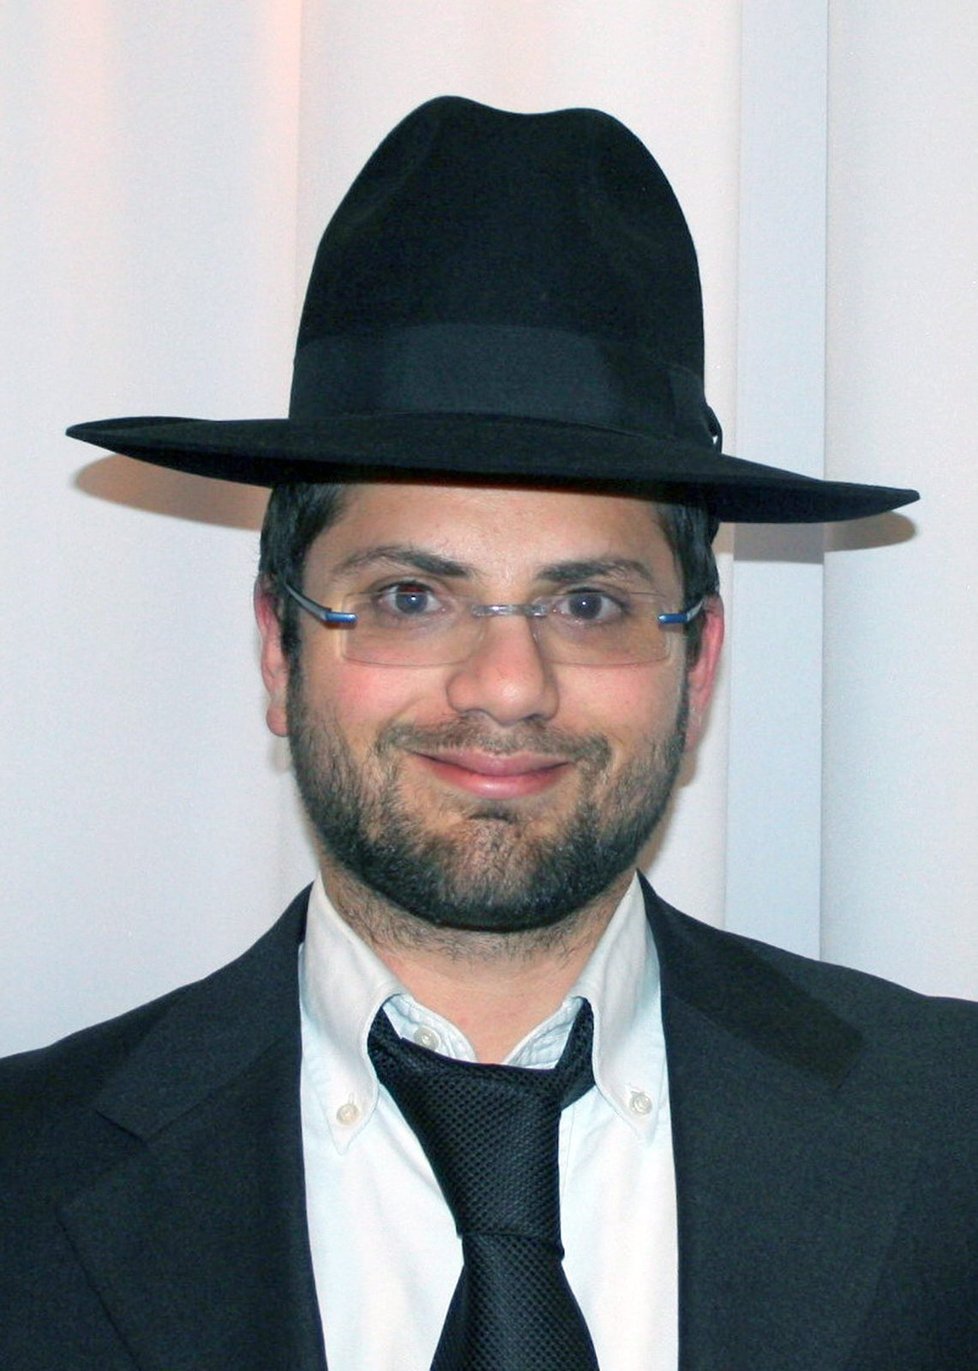 Třicetiletého rabína Jonathana Sandlera připravil o život šílený střelec